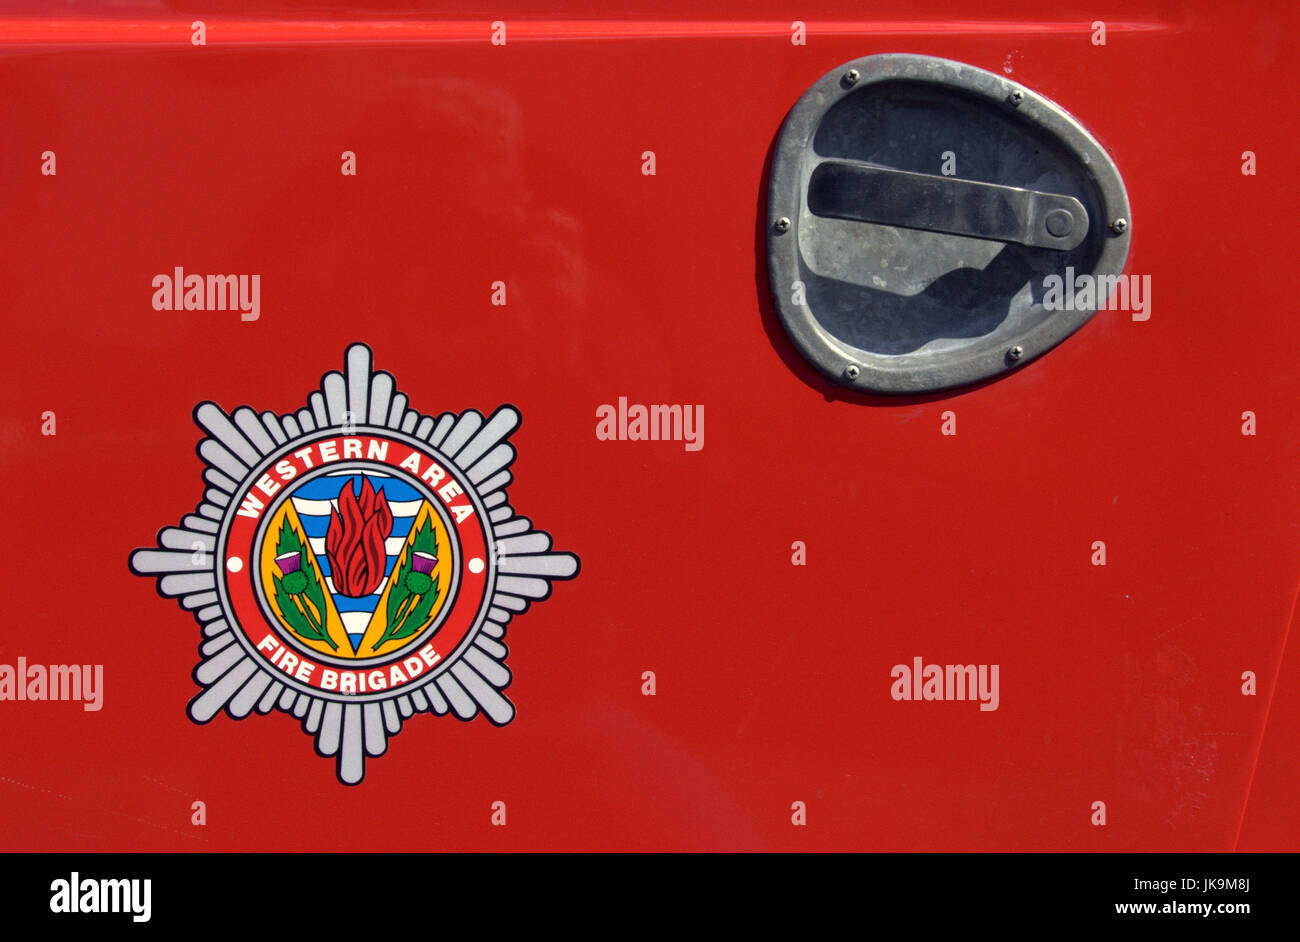 Strathclyde fire brigade préservation groupe society vintage du matériel d'incendie et tous les moteurs Banque D'Images